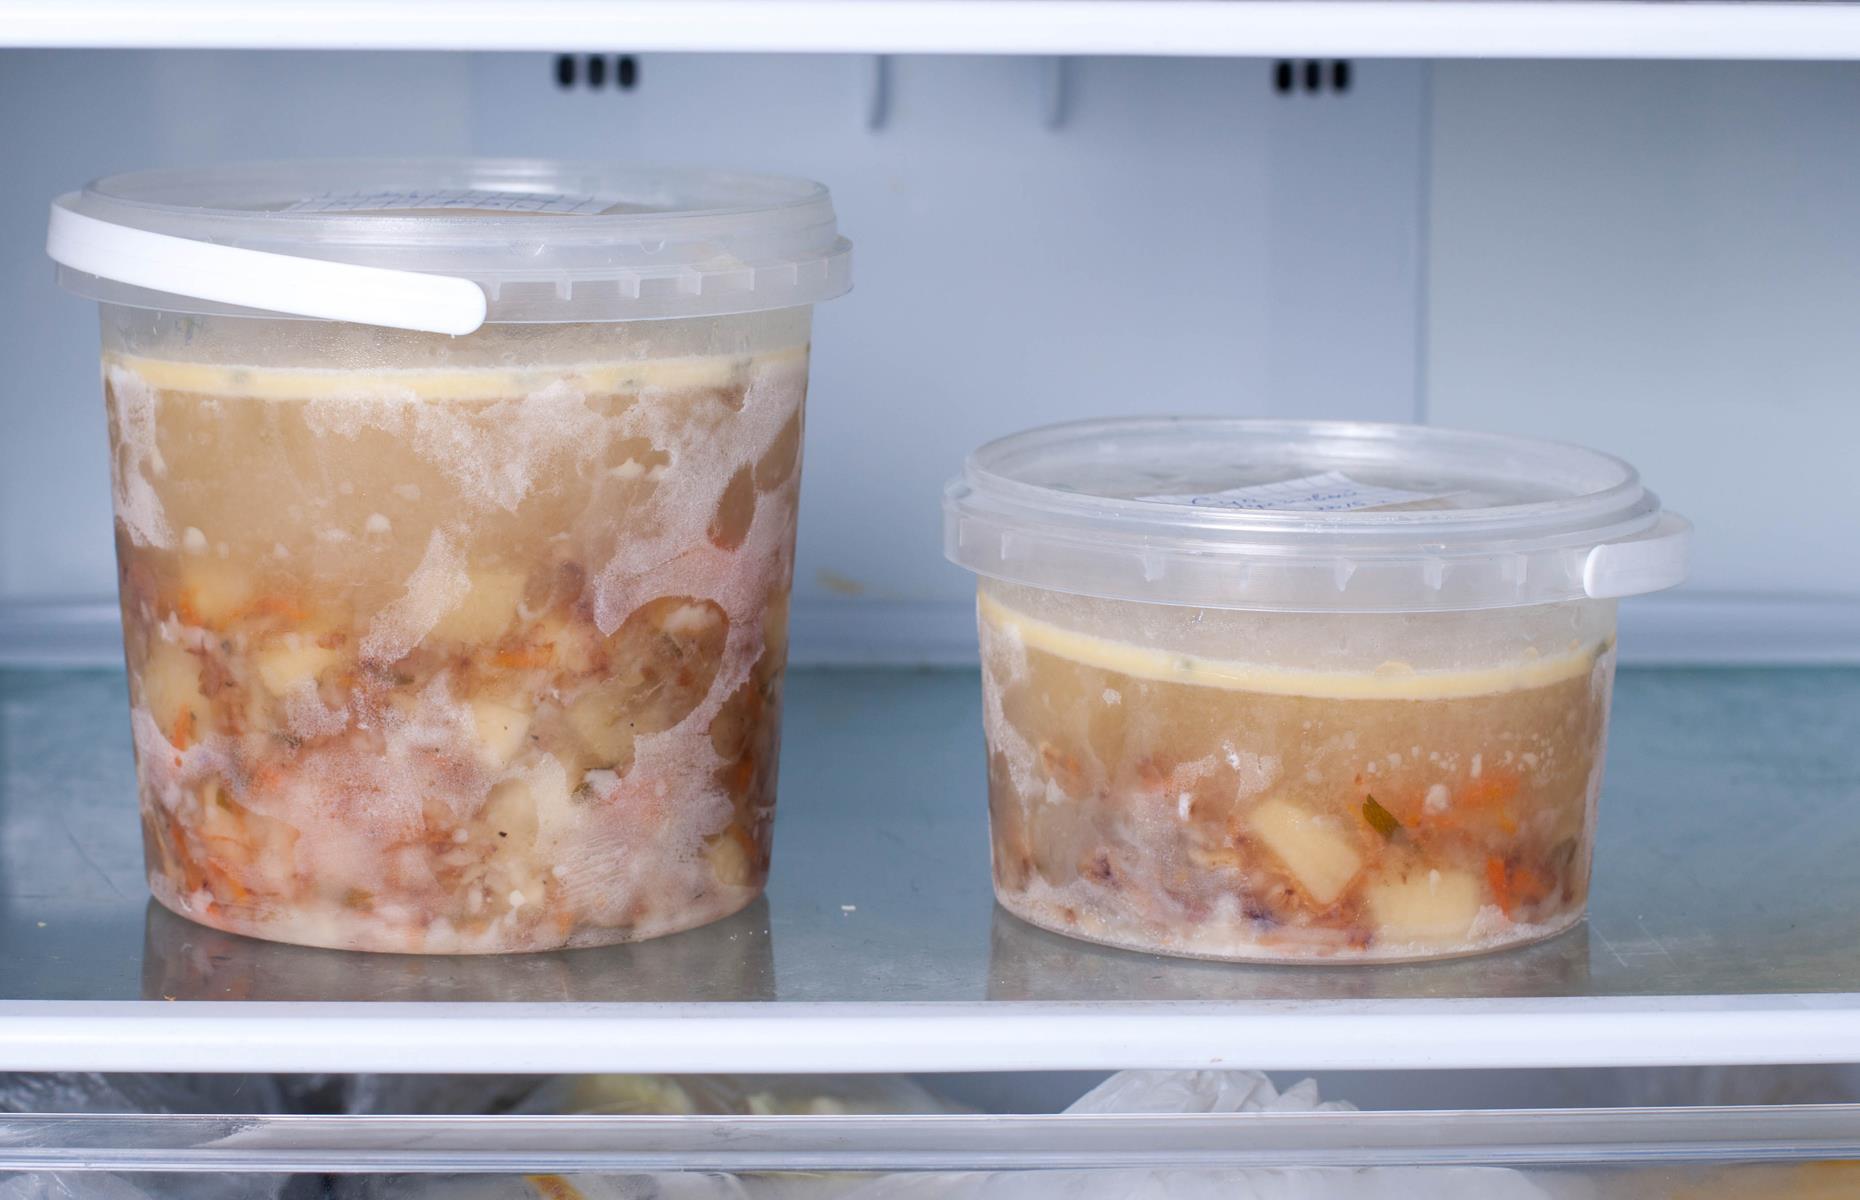 Заморозка бульона. Контейнеры для заморозки супа в морозилке. Суп в морозилке. Замороженный бульон контейнерах. Супы в заморозке.